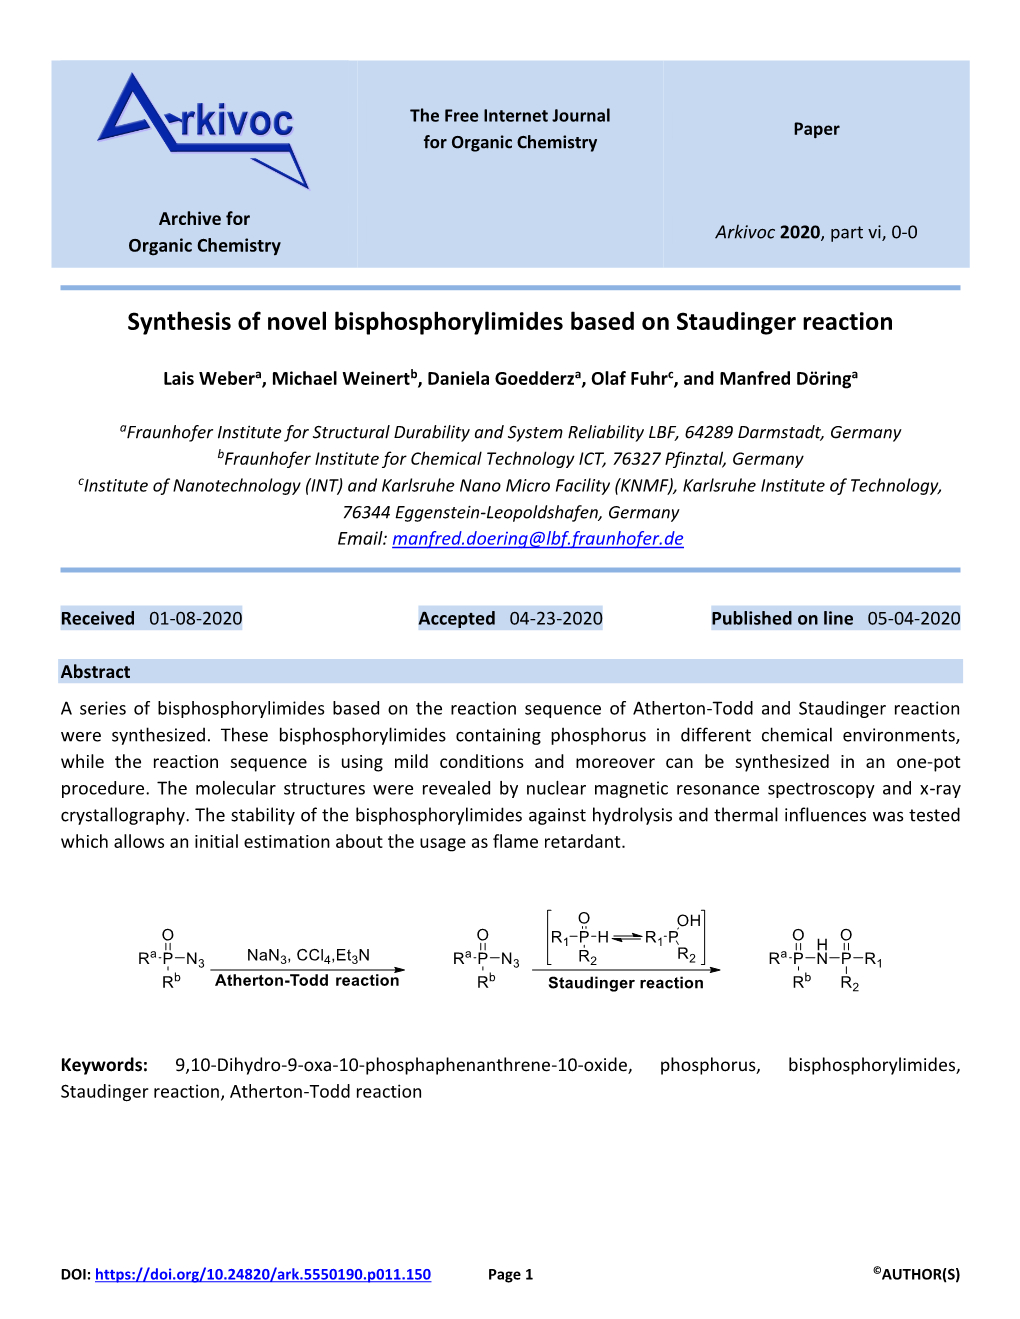 Synthesis of Novel Bisphosphorylimides Based on Staudinger Reaction